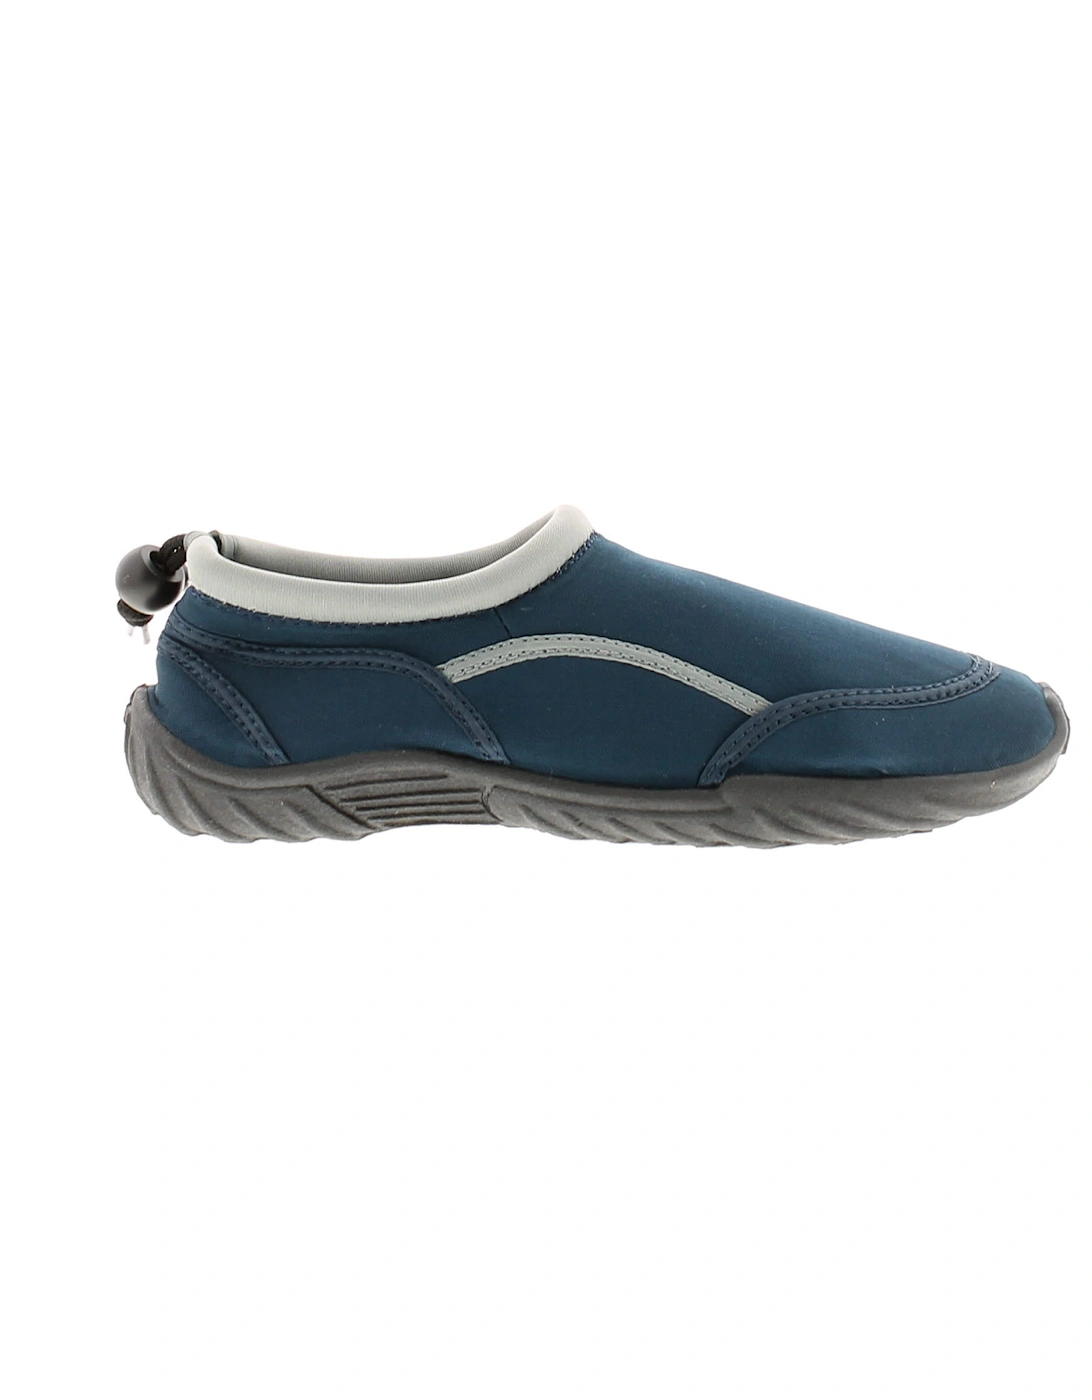 Boys Aqua Shoes Rockpool Slip On navy UK Size